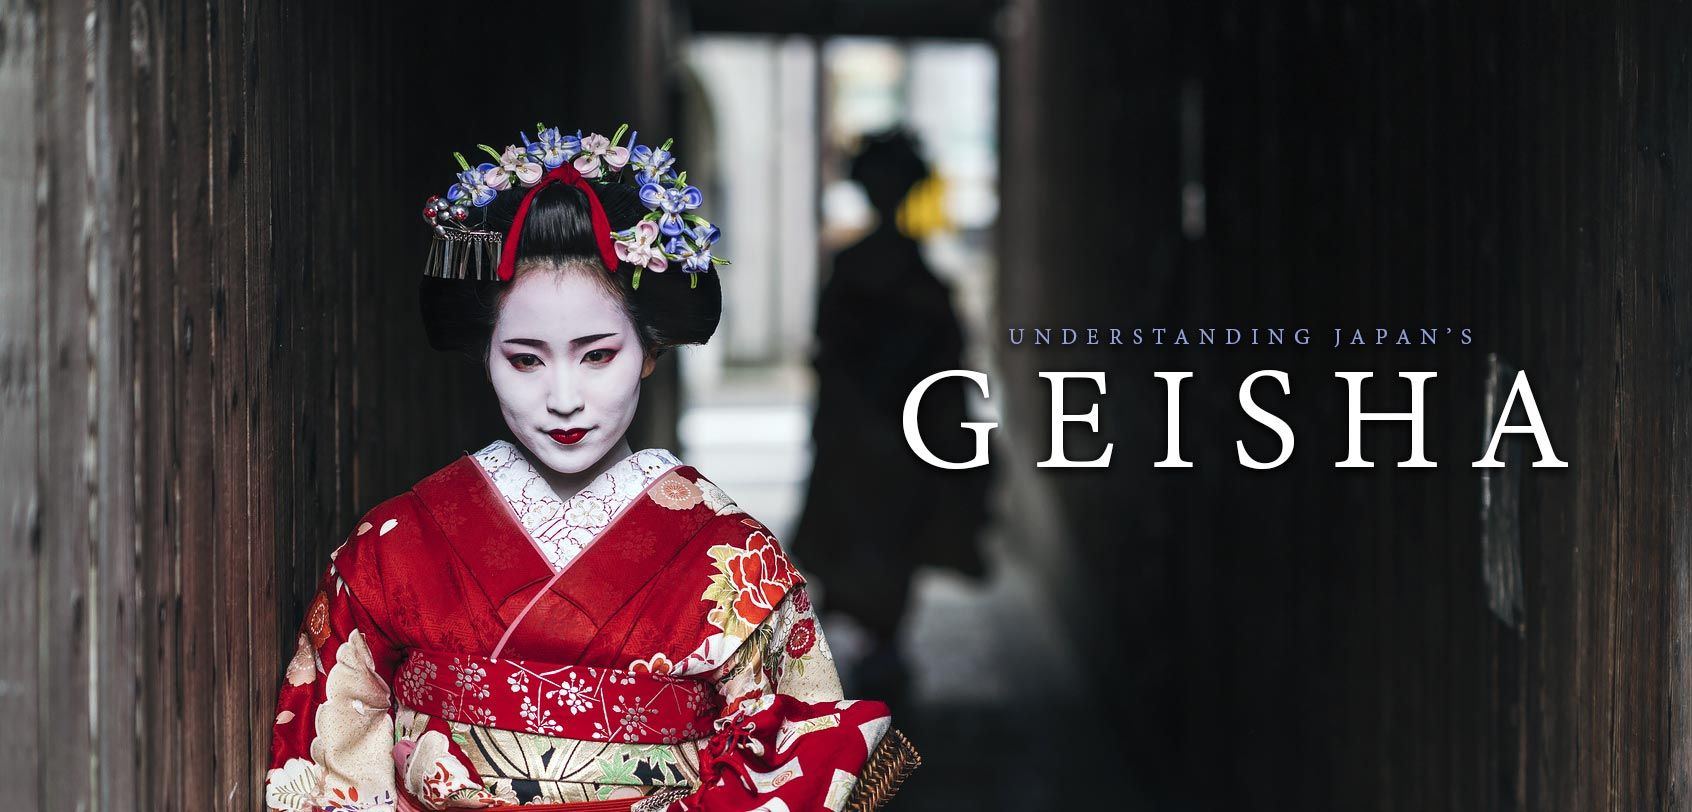 Jessica R. reccomend Sex story of a geisha